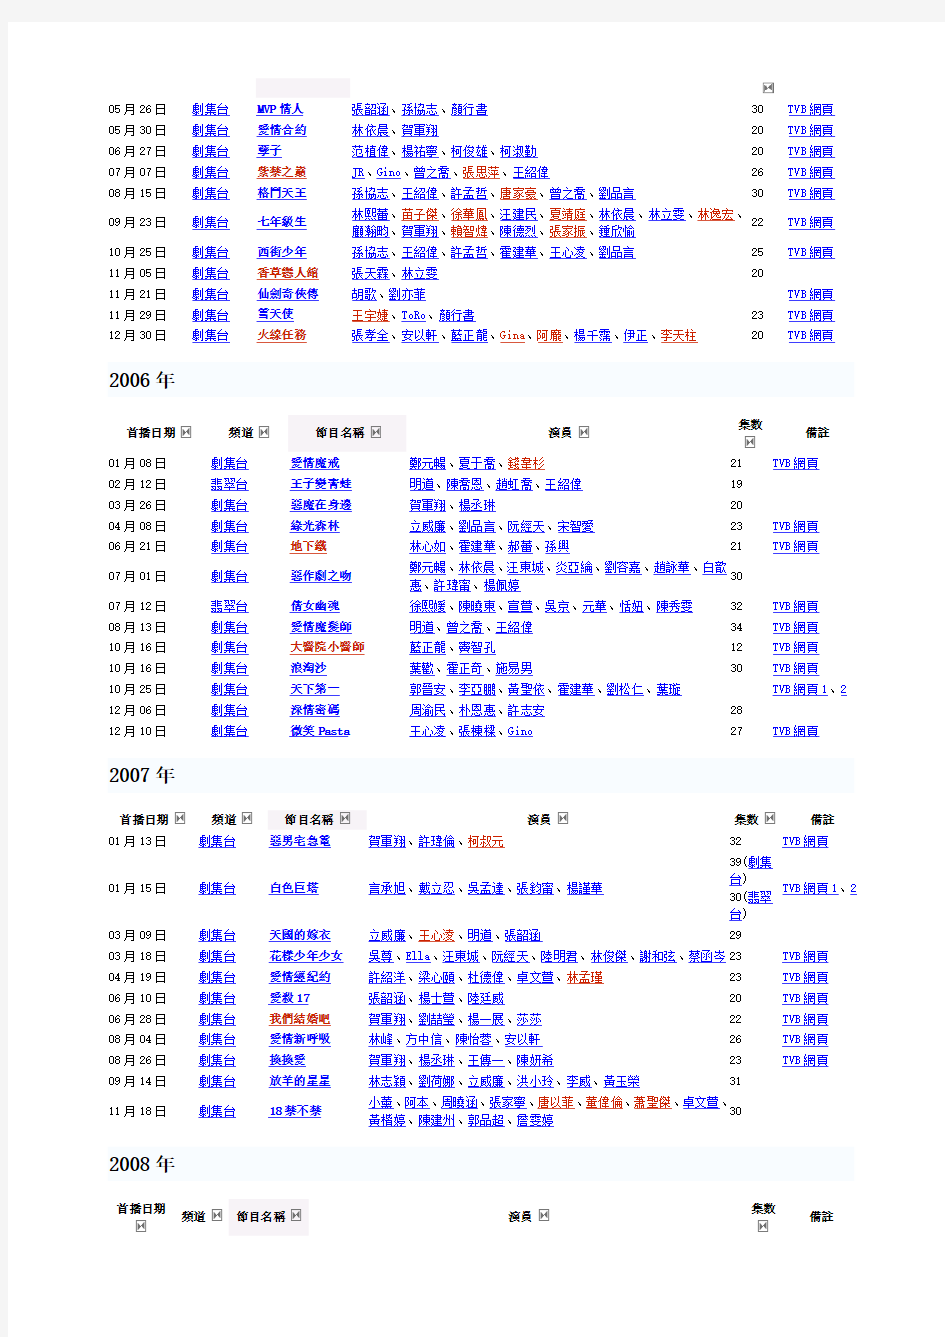 TVB无线电视播过的台湾电视剧电影列表